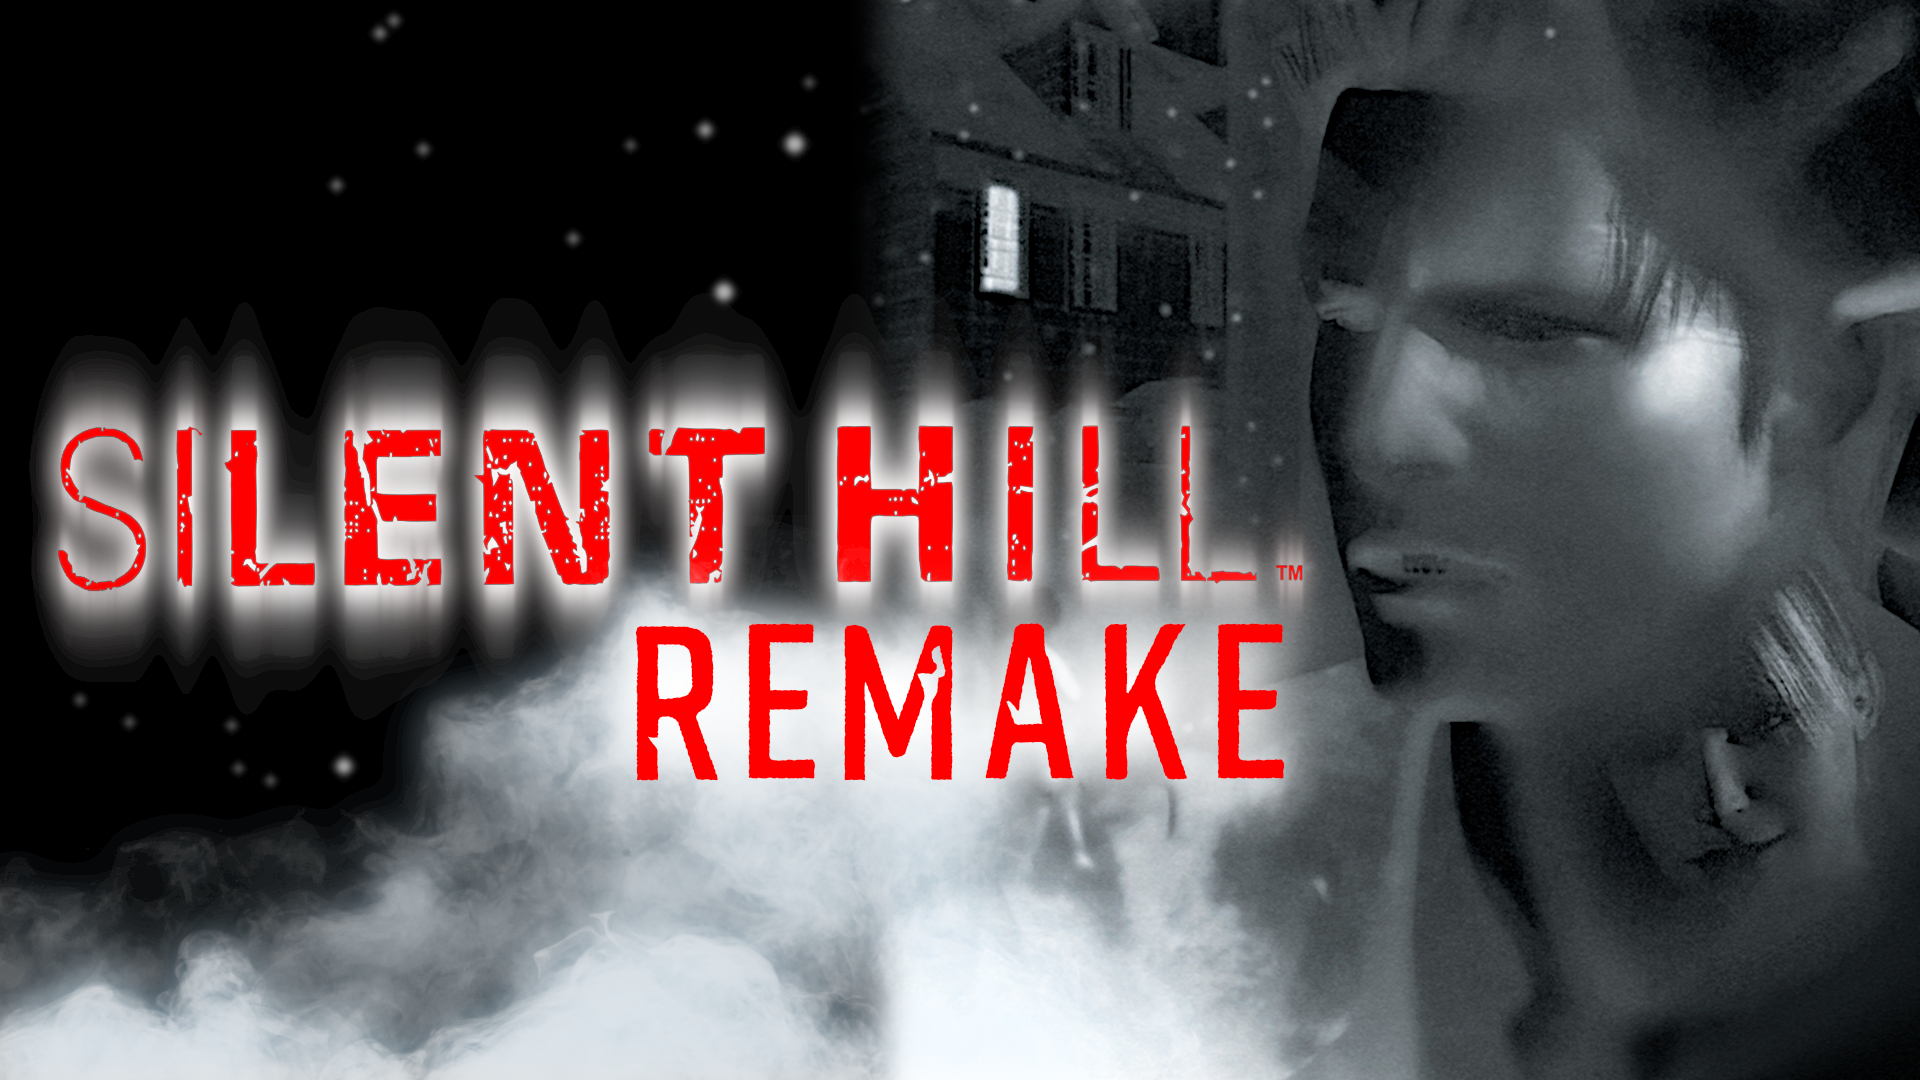 silent hill  Silent hill, Silent hill 1, Silent